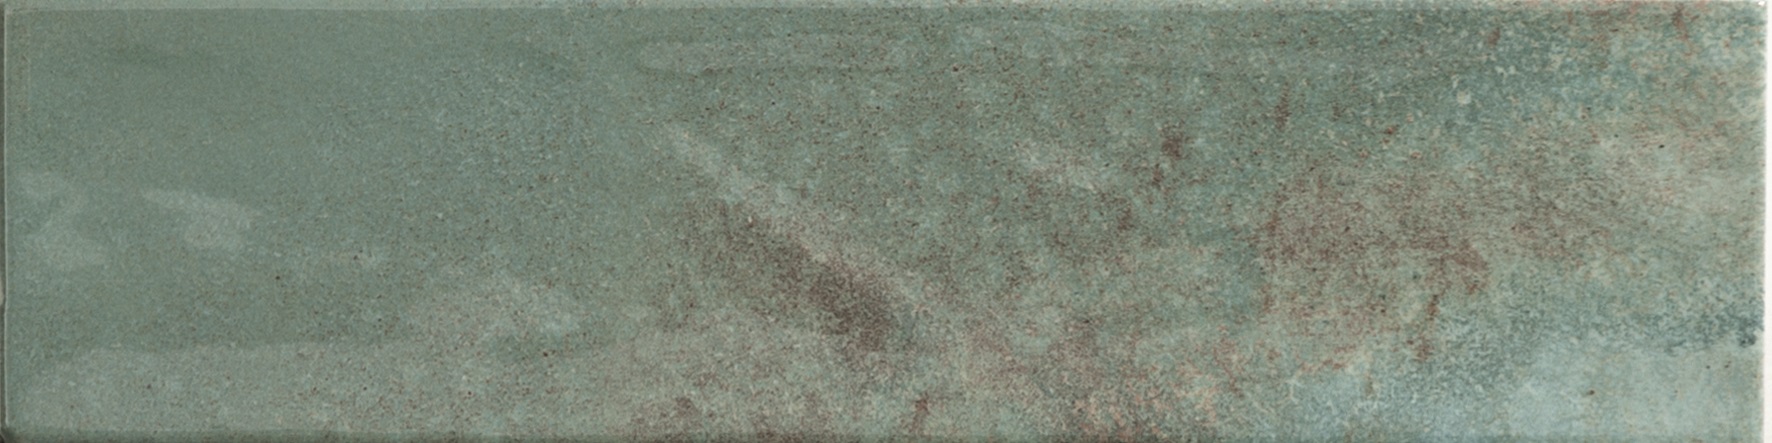 Catalea Gres Timra Metrofliesen Grün glänzend 7,5x30 cm 